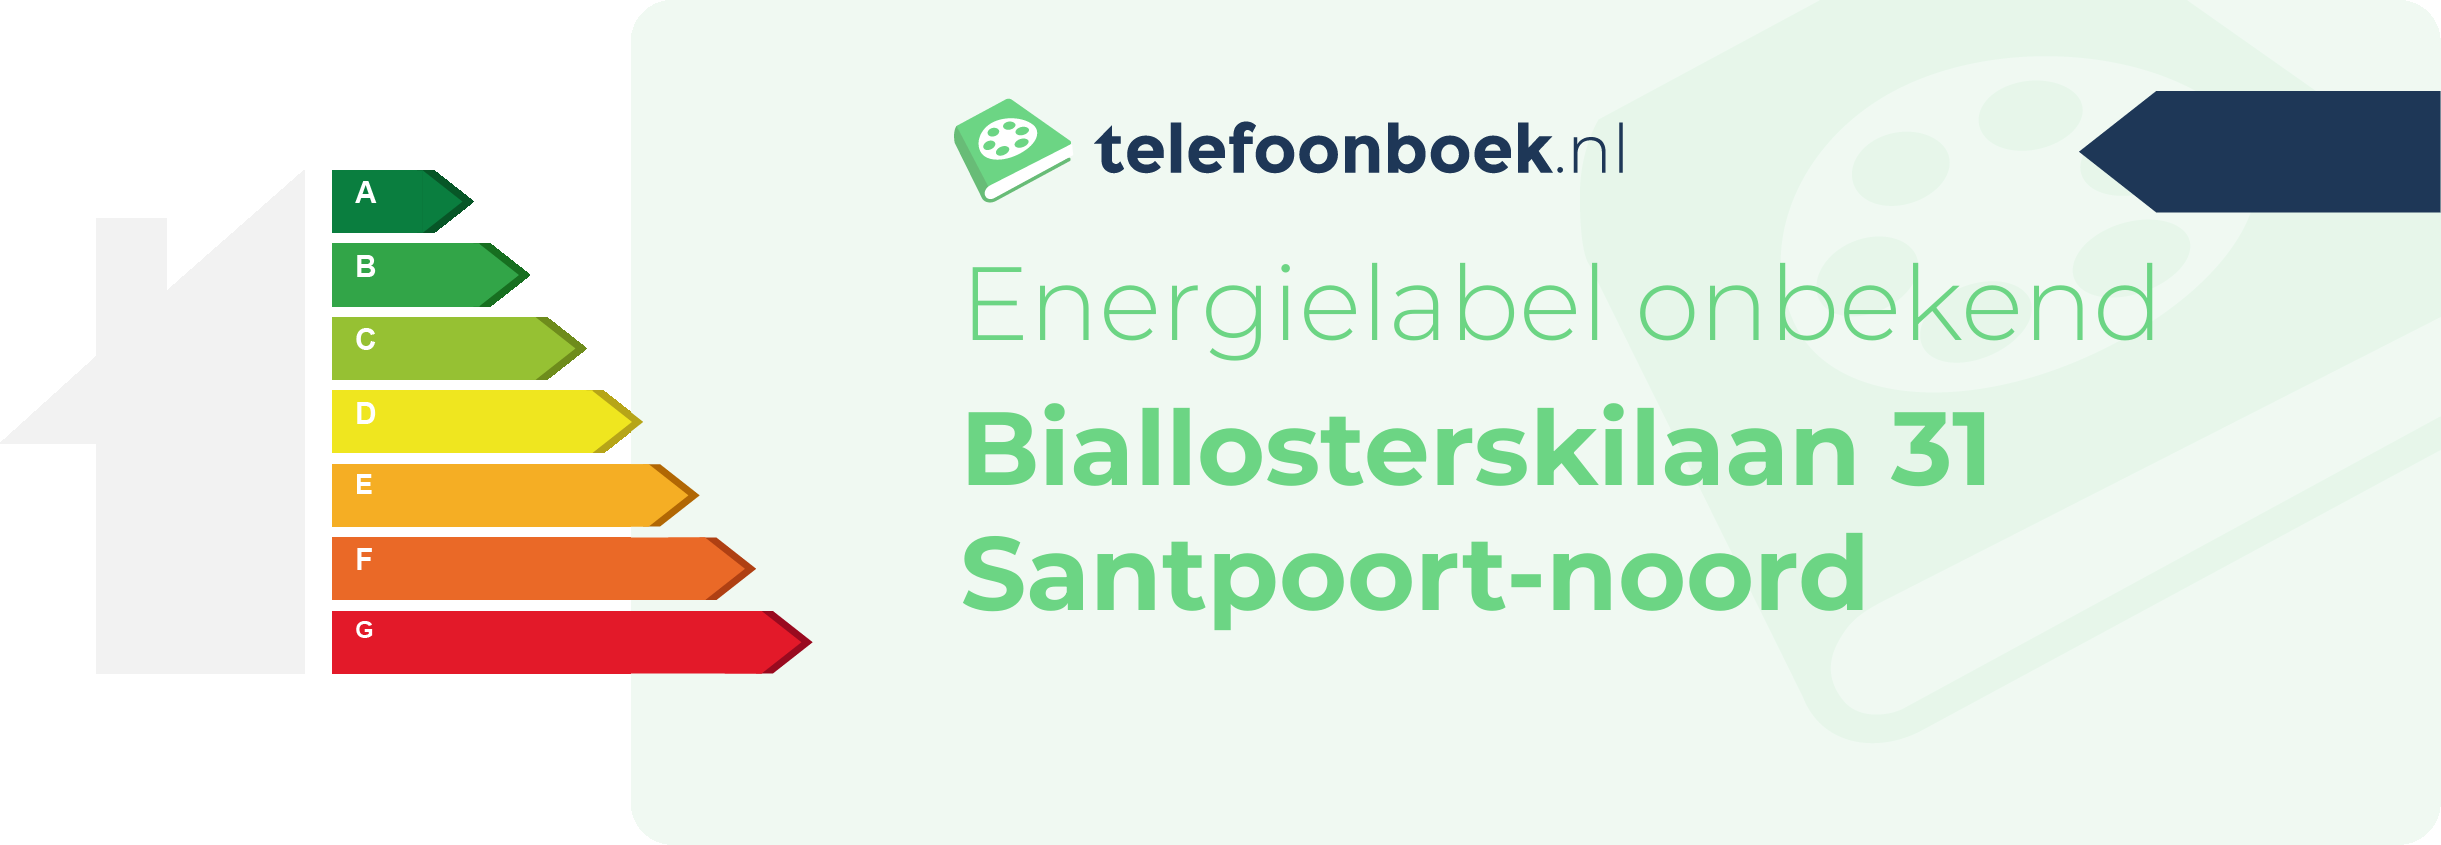 Energielabel Biallosterskilaan 31 Santpoort-Noord